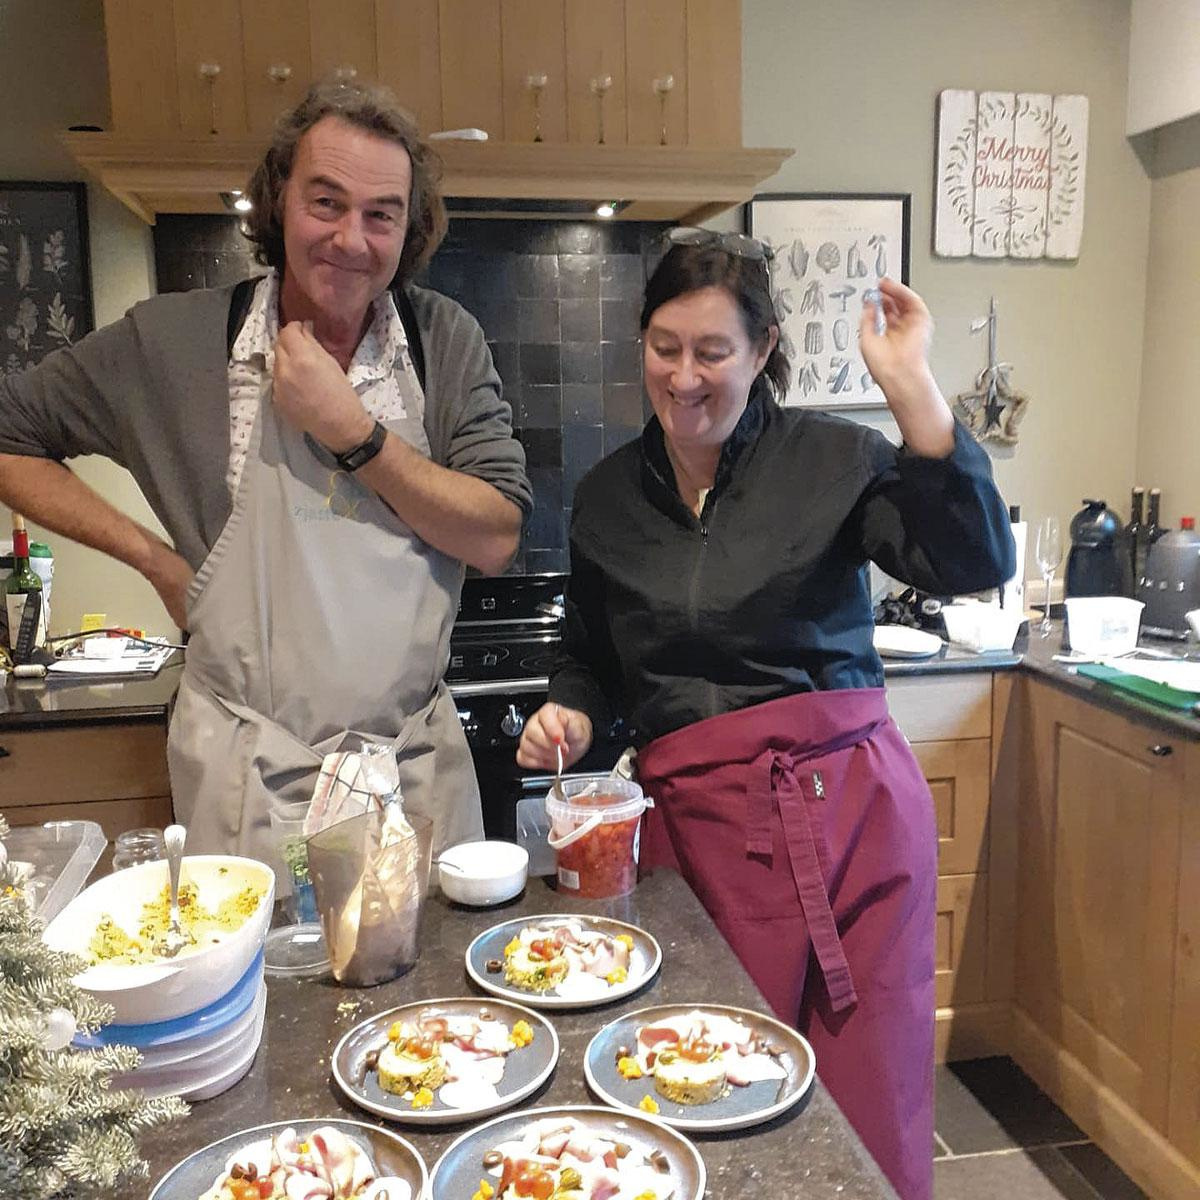 Mieke Van Mechelen aan het werk in de keuken, zjatteentaloere facebook